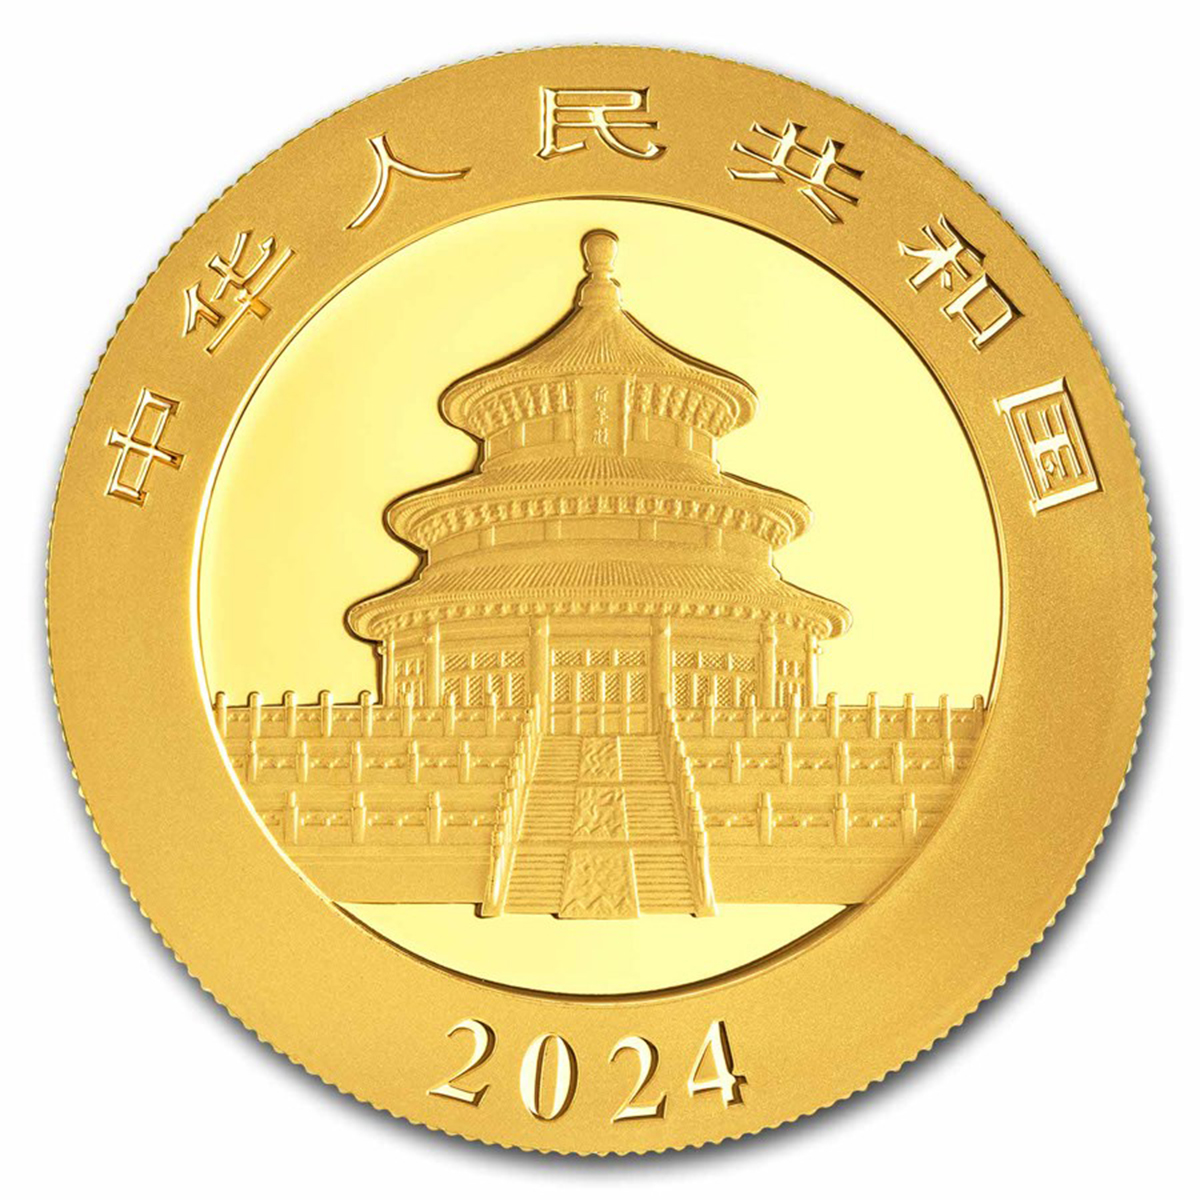 30 גרם מטבע זהב - פנדה 2024